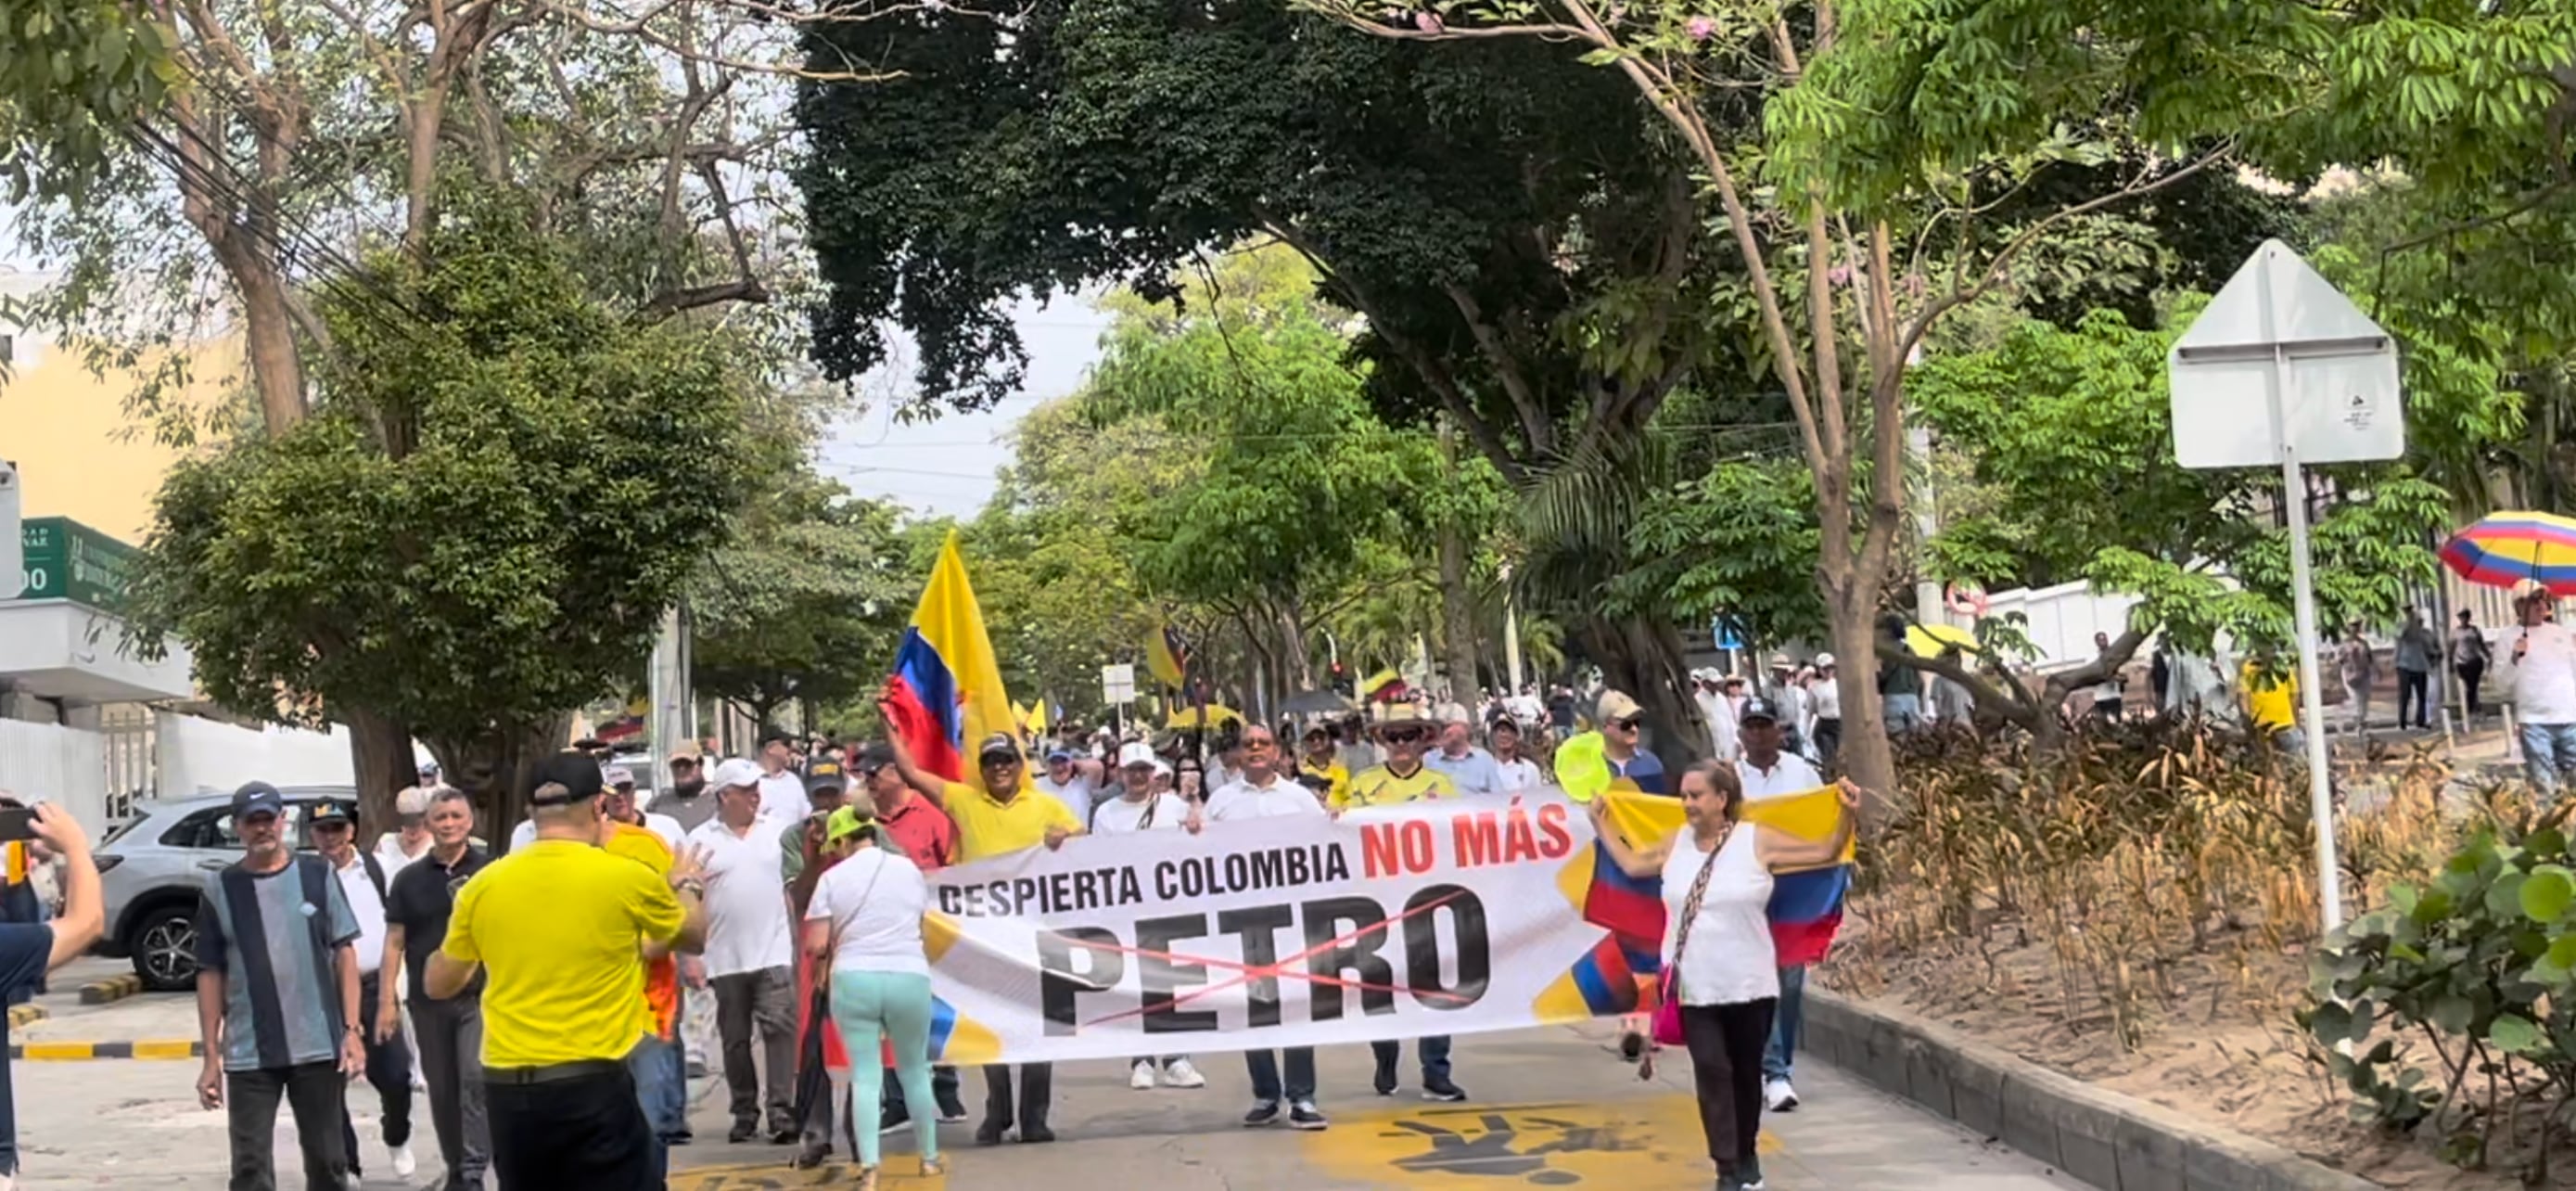 Cerca de 4.000 personas marcharon en Barranquilla este 21 de abril, según las autoridades